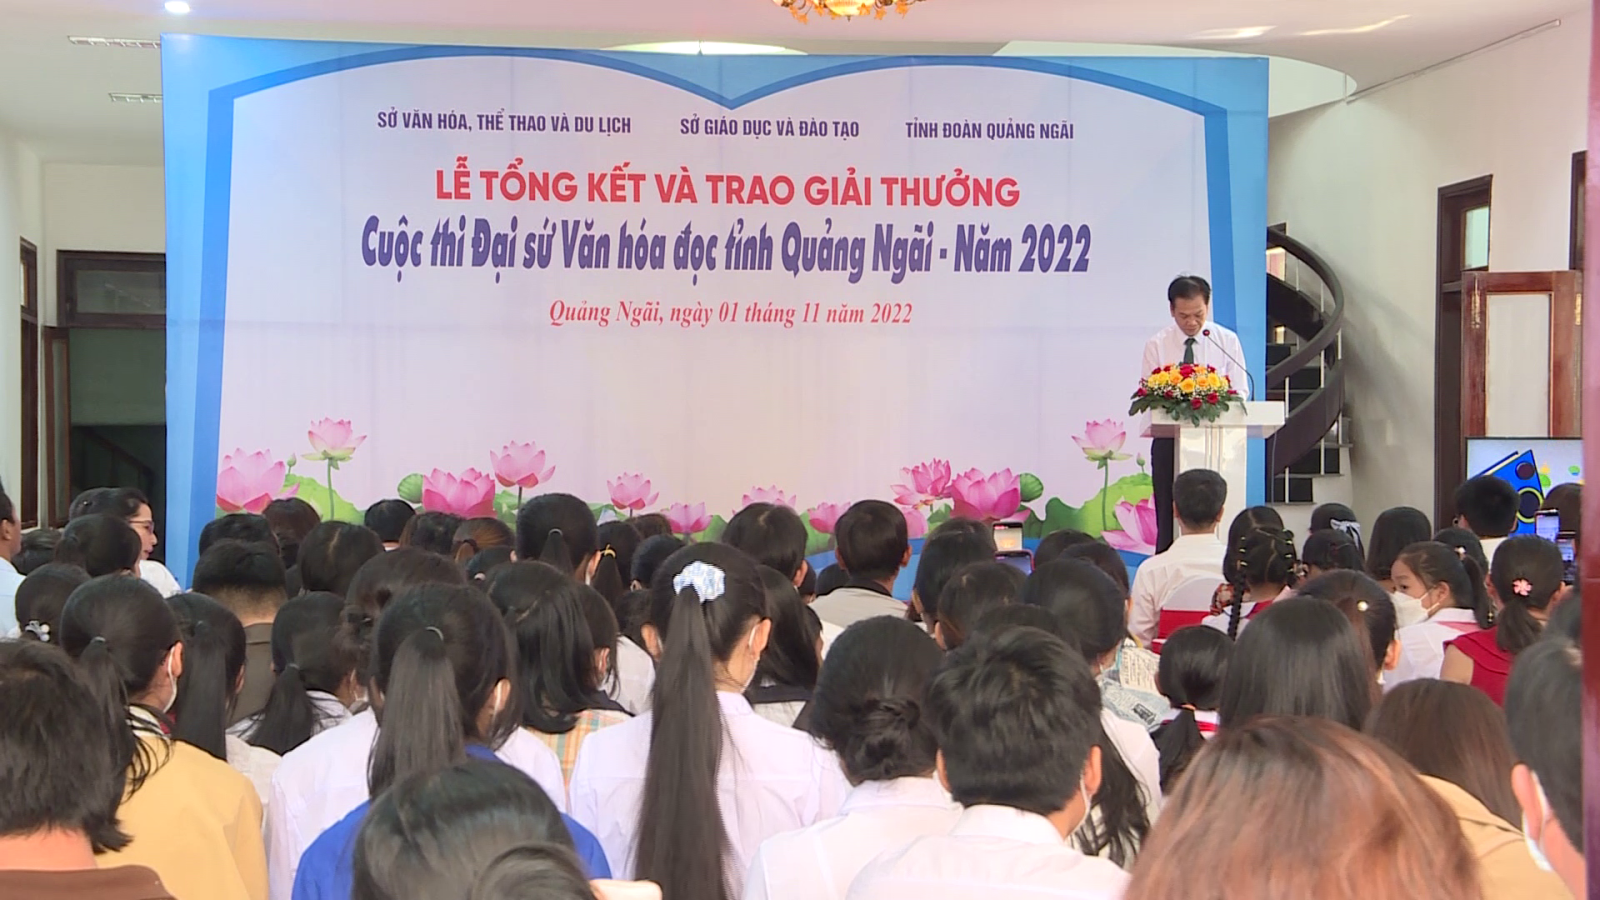 Trao giải cuộc thi đại sứ văn hóa đọc tỉnh Quảng Ngãi năm 2022